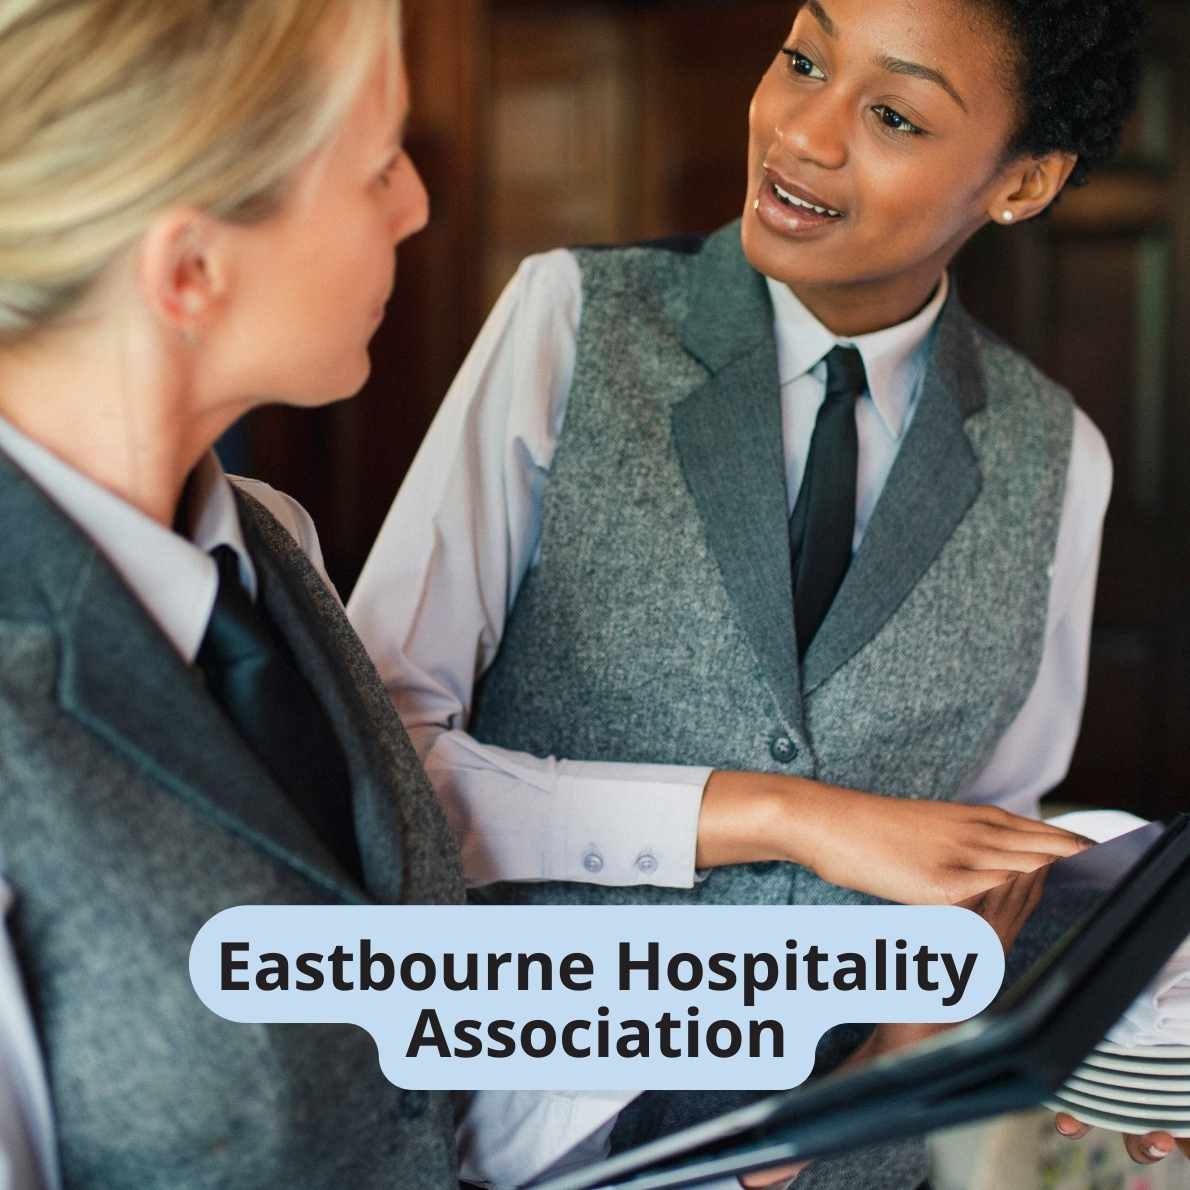 Eastbourne Hospitality Association